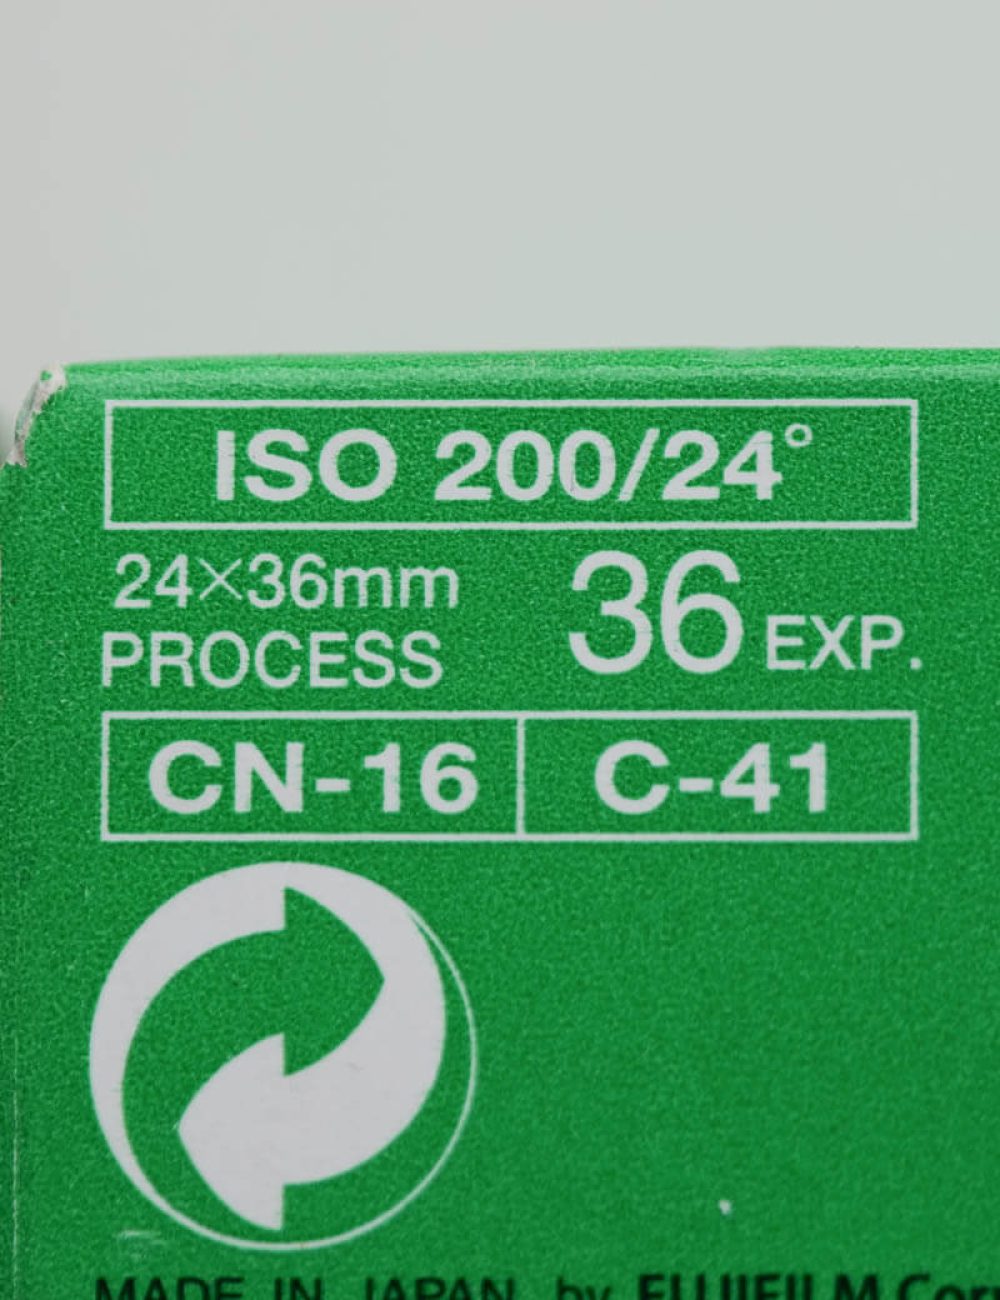 La norme ISO présente sur le carton d'une Fujifilm C200